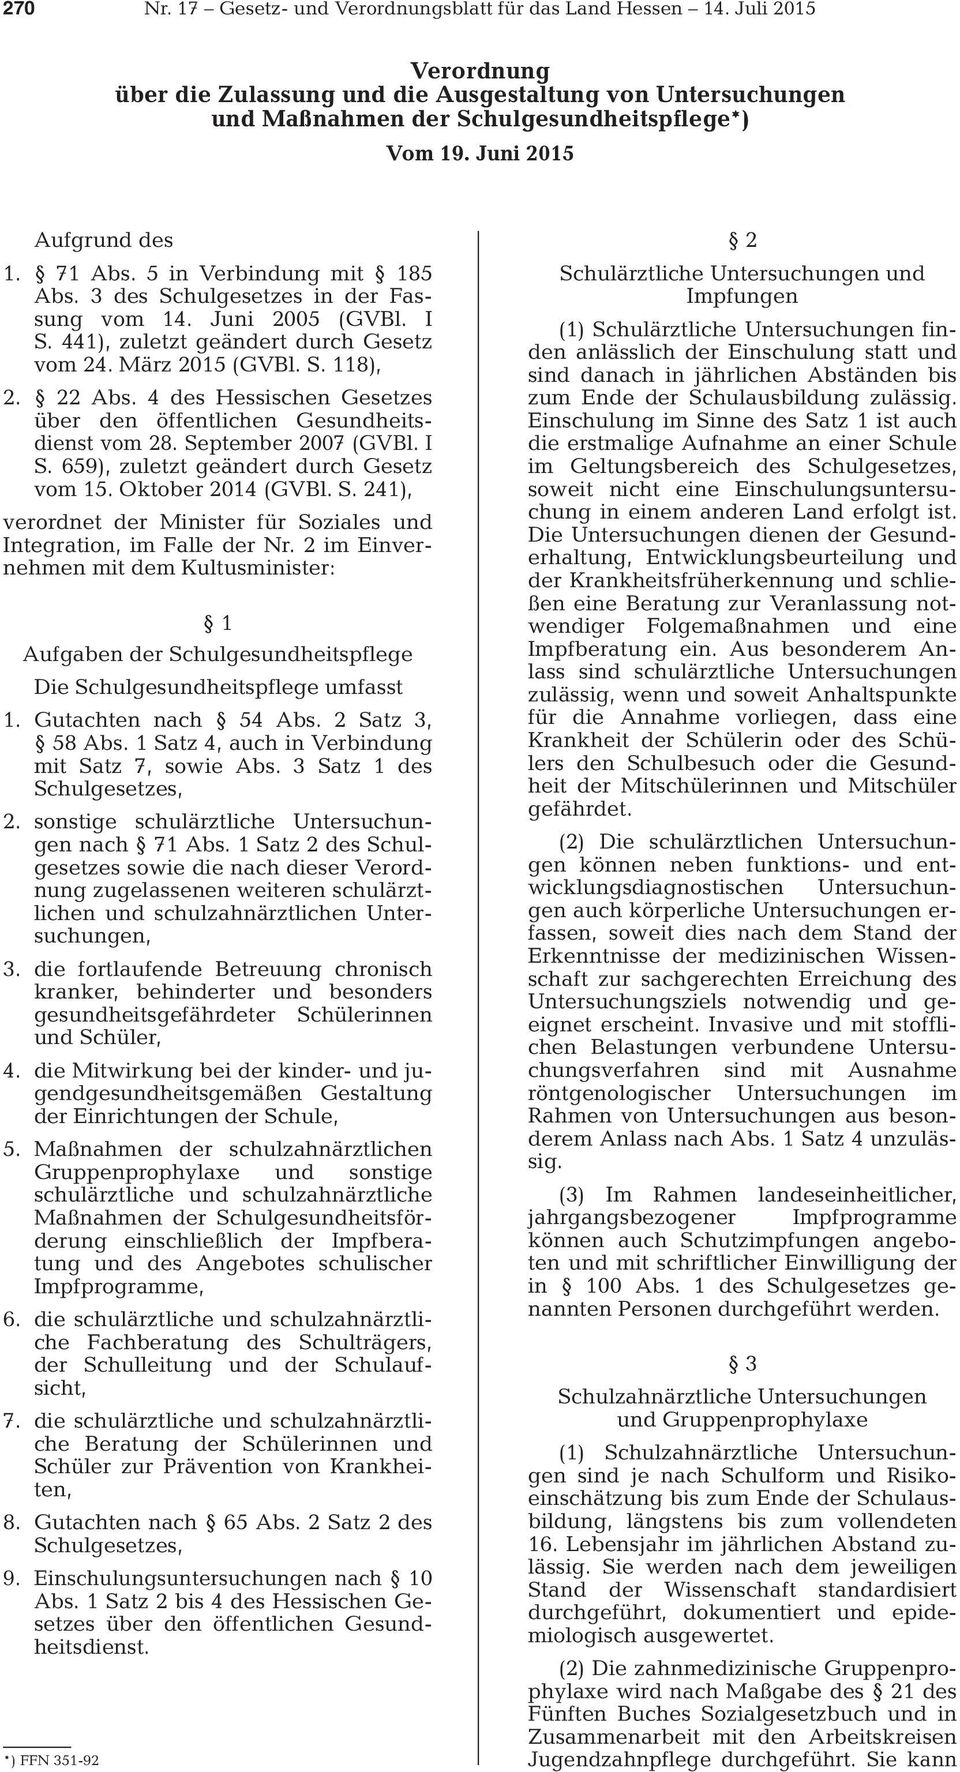 22 Abs. 4 des Hessischen Gesetzes über den öffentlichen Gesundheitsdienst vom 28. September 2007 (GVBl. I S. 659), zuletzt geändert durch Gesetz vom 15. Oktober 2014 (GVBl. S. 241), verordnet der Minister für Soziales und Integration, im Falle der Nr.